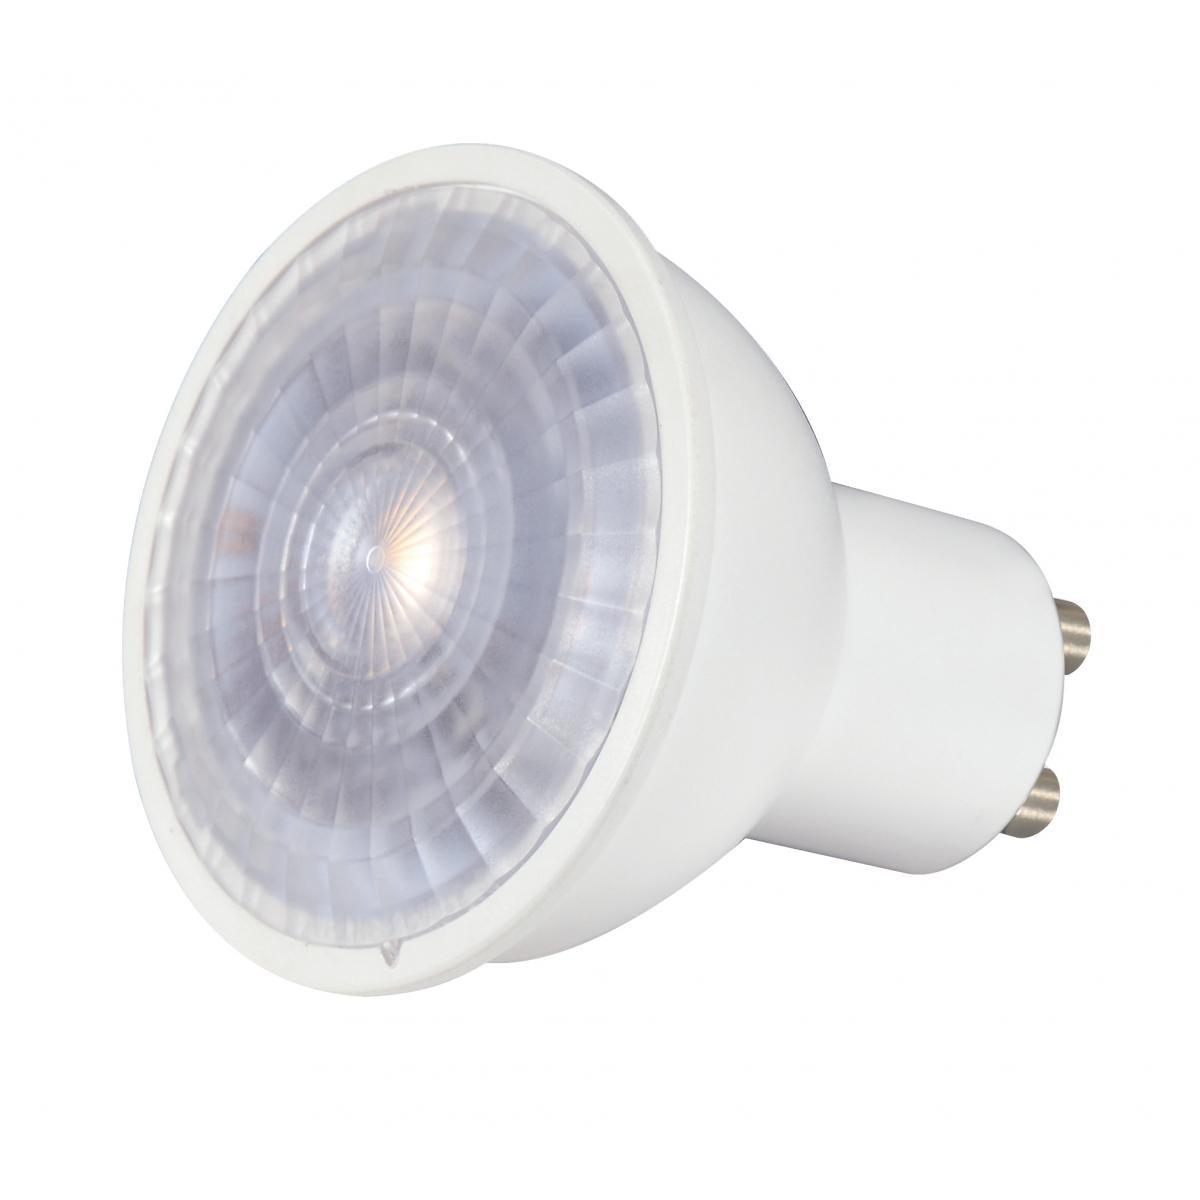 MR16 Reflector LED bulb, 7 watt, 450 Lumens, 2700K, GU10 Base, 40 Deg. Flood - Bees Lighting